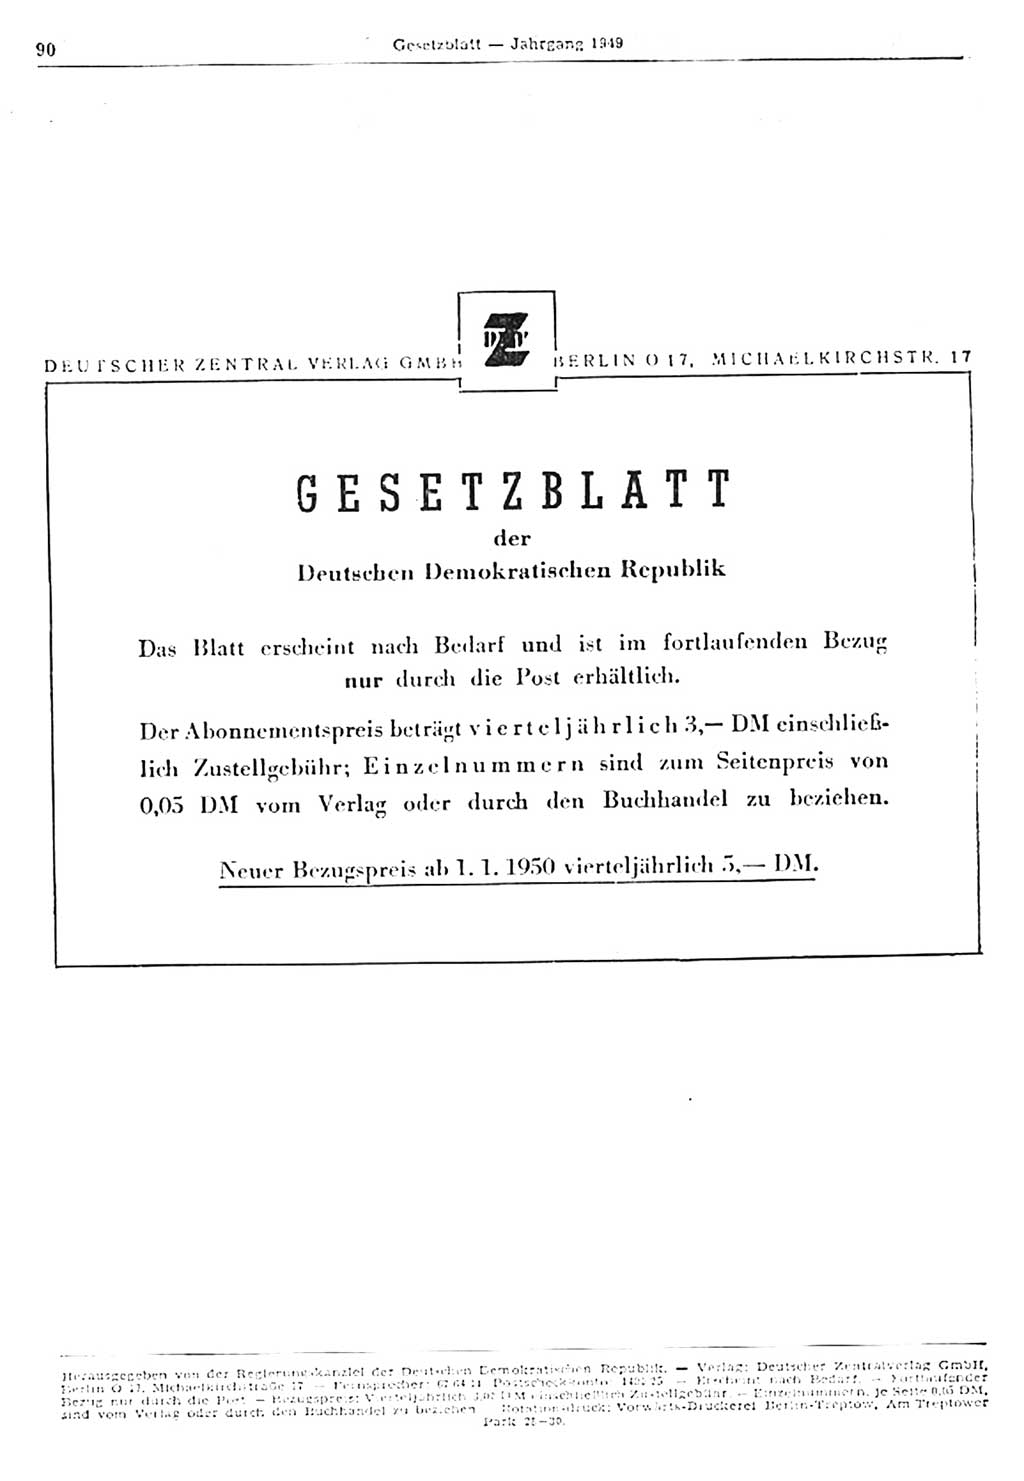 Gesetzblatt (GBl.) der Deutschen Demokratischen Republik (DDR) 1949, Seite 90 (GBl. DDR 1949, S. 90)